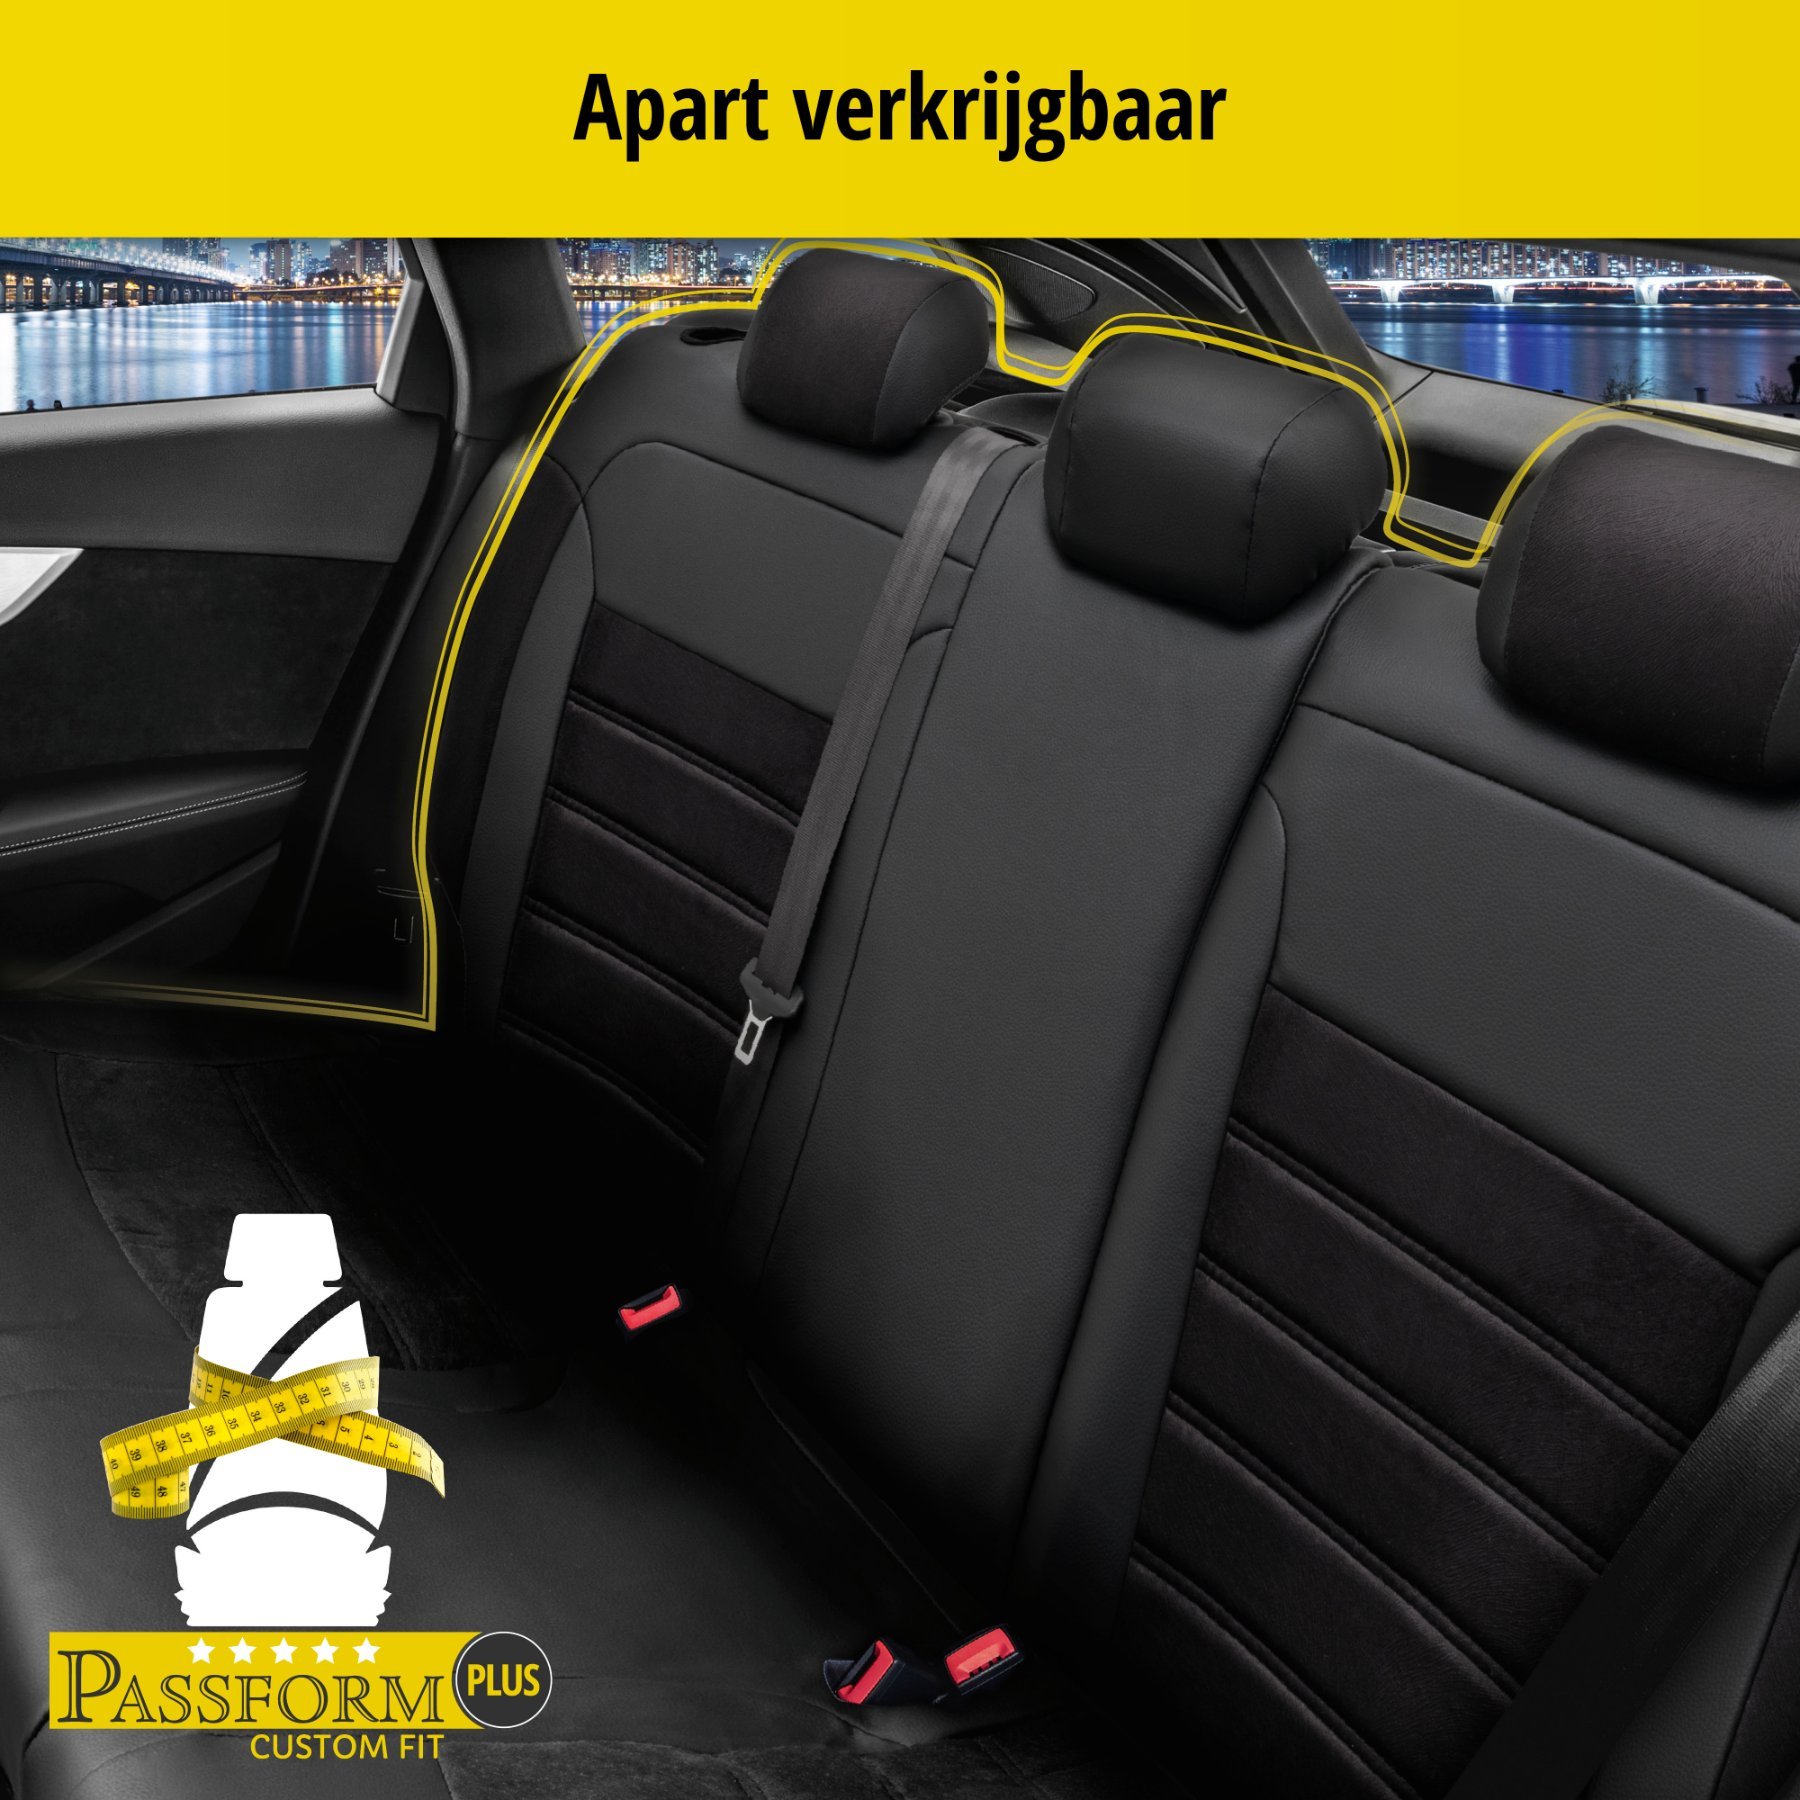 Auto stoelbekleding Bari geschikt voor Opel Insignia A SportsTourer 07/2008-03/2017, 2 enkele zetelhoezen voor standard zetels